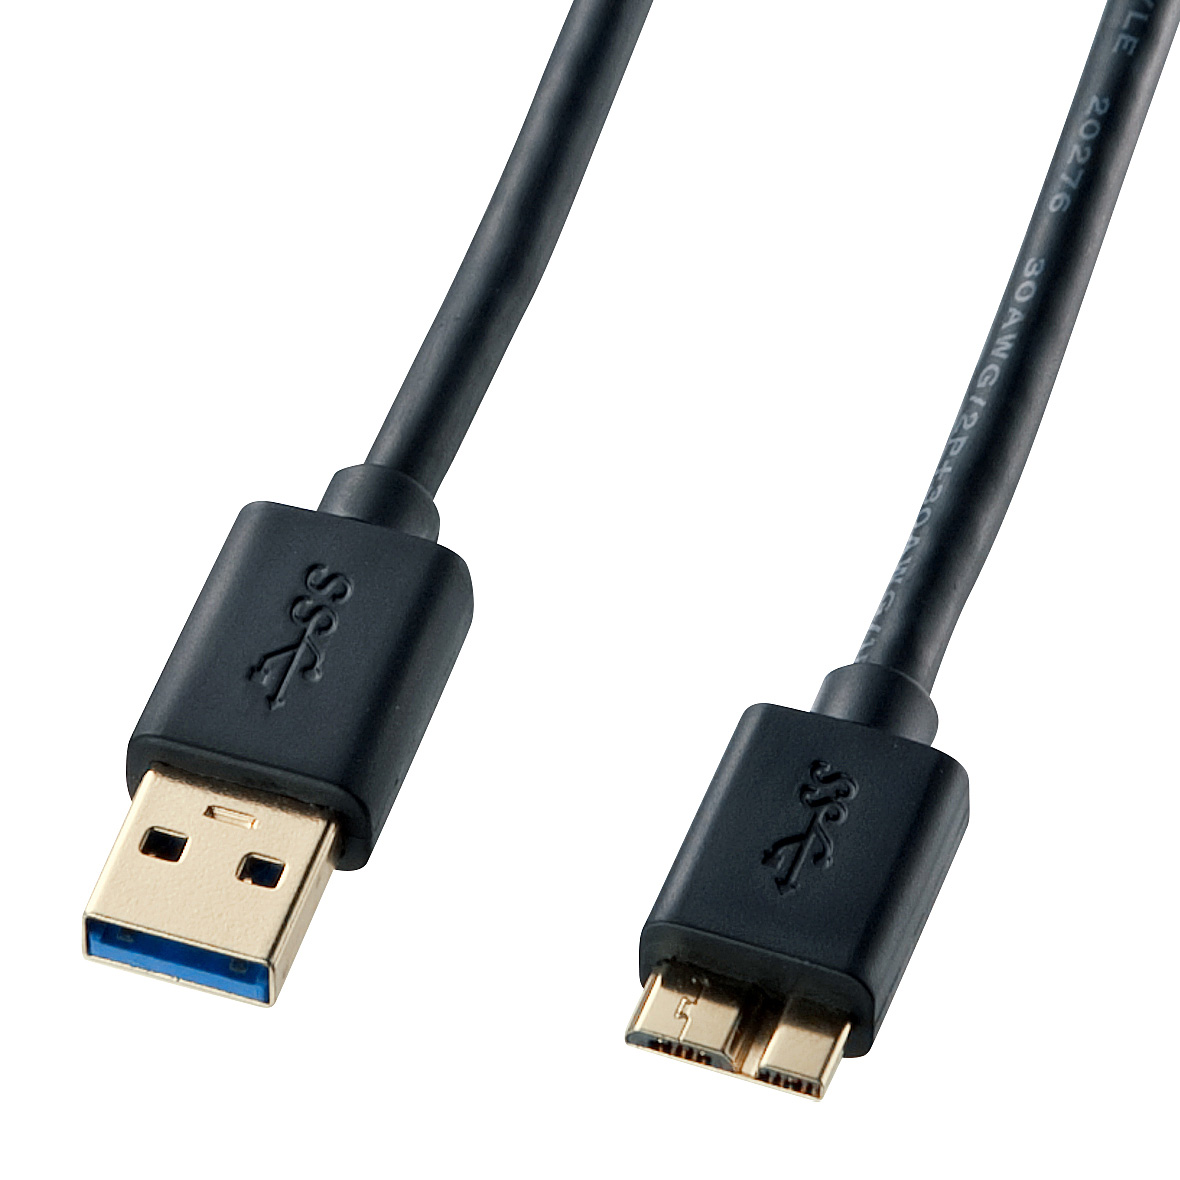 對應USB 3.0/3.1的Micro電纜線 KU30-AMC10BK